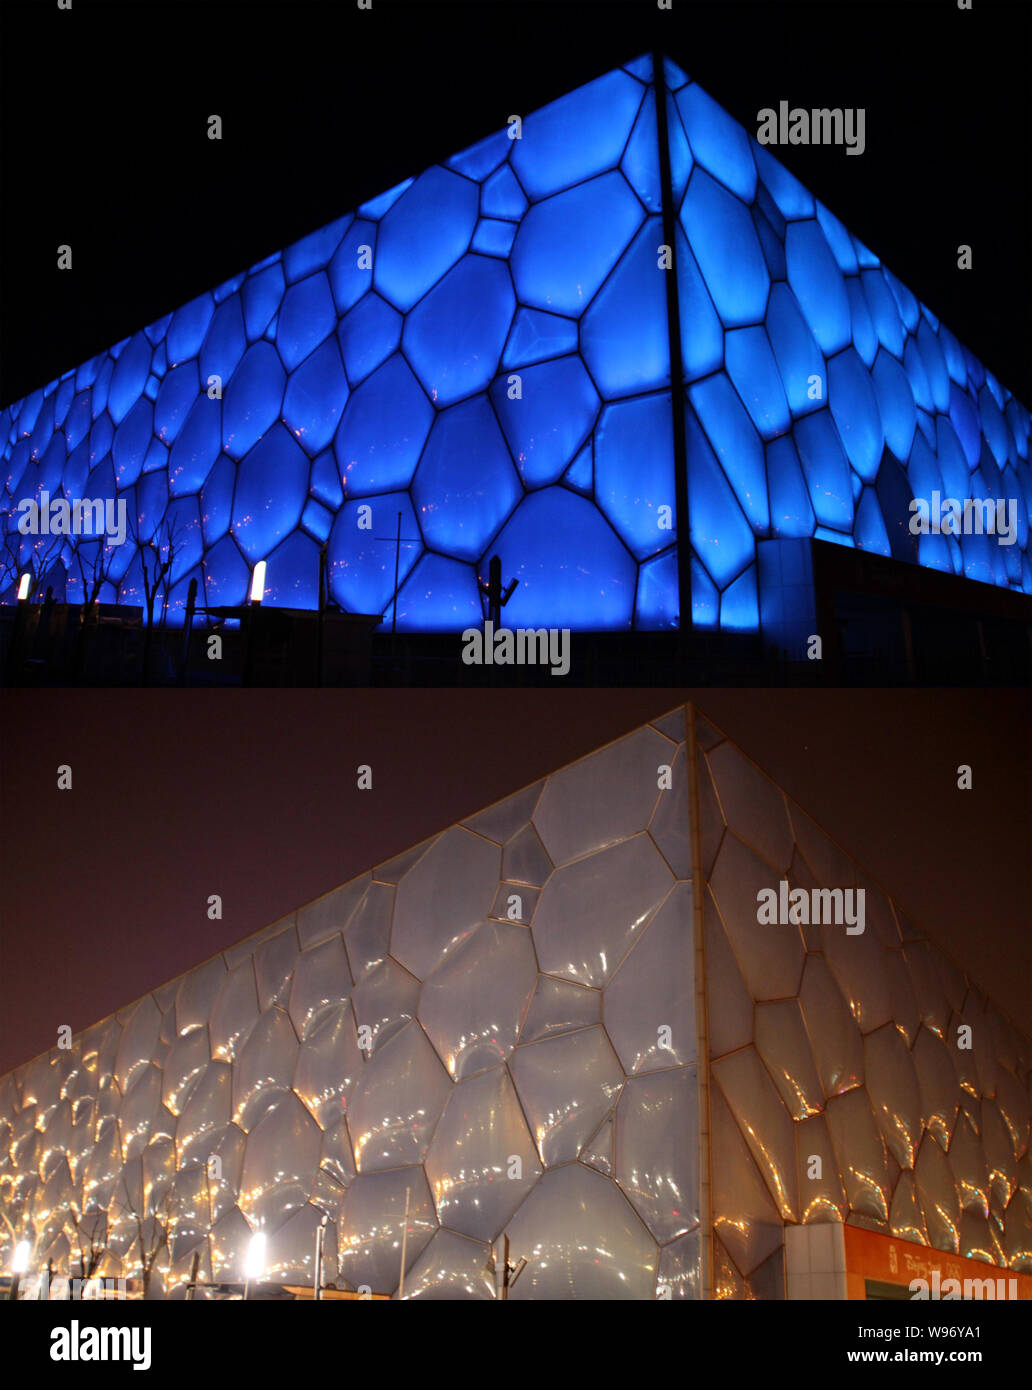 Das zusammengesetzte Bild zeigen die National Aquatics Centre, da das Wasser Cube bekannt vor, oben, und nachdem die Beleuchtung ausgeschaltet sind die Erde Ho zu markieren Stockfoto